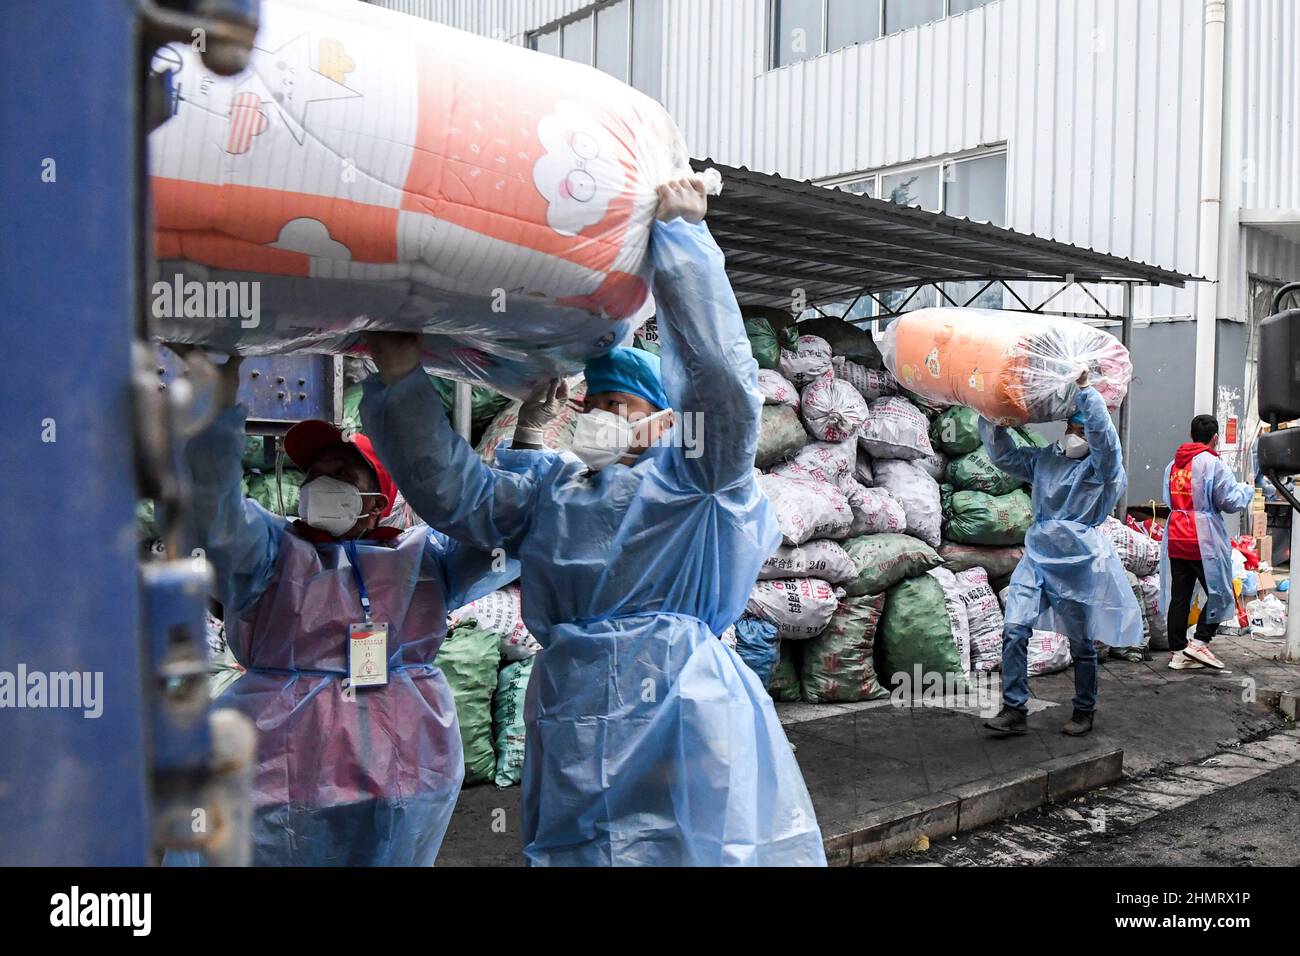 Debao, Región Autónoma de Guangxi Zhuang, China. 11th Feb, 2022. Los trabajadores cargan edredones para el personal de primera línea en el condado de Debao de la ciudad de Baise, región autónoma de Guangxi Zhuang, al sur de China, 11 de febrero de 2022. Los materiales vivos y médicos han sido entregados continuamente a Debao para ayudar a la lucha contra el reciente resurgimiento de la pandemia COVID-19 en el condado. Crédito: Cao Yiming/Xinhua/Alamy Live News Foto de stock